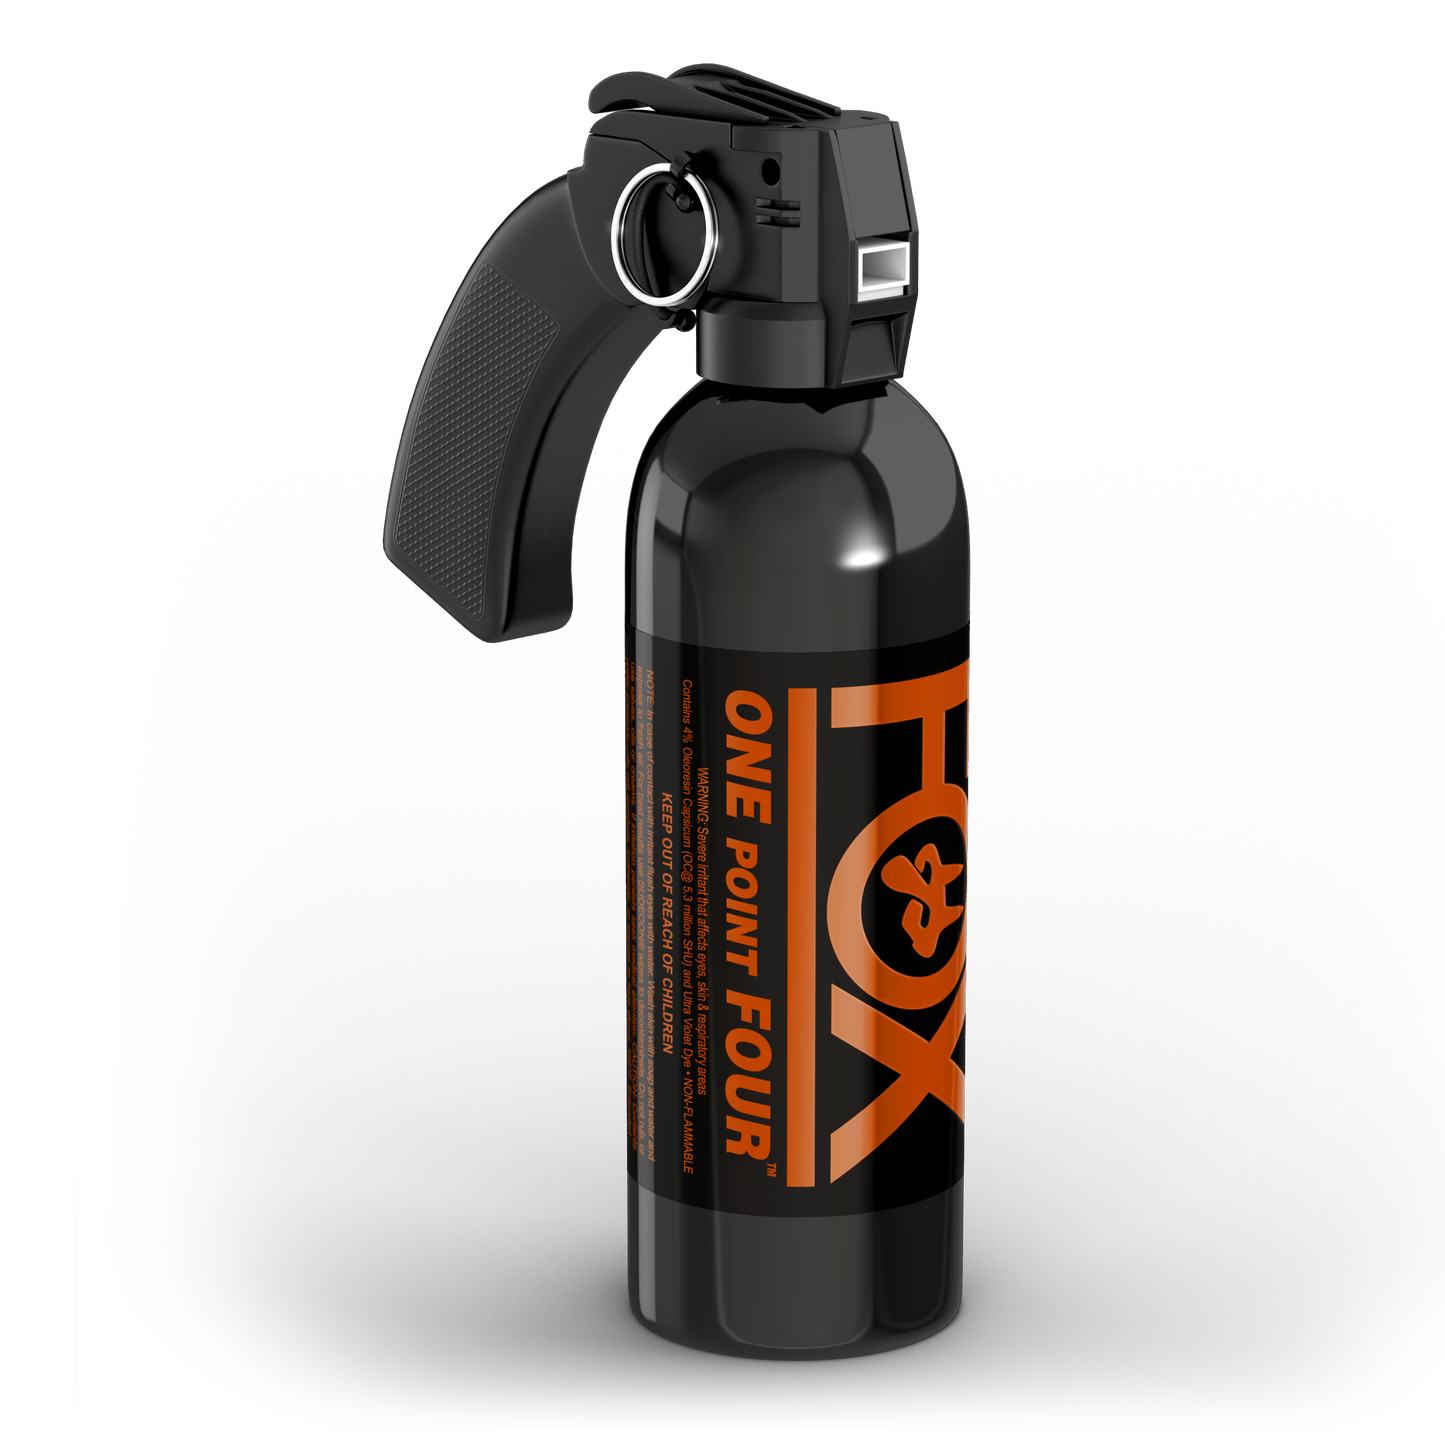 One Point Four® Hottest Pepper Spray with 1.4 MC plus UV Marking Dye, 16 oz Crowd Control Cone Fog Spray